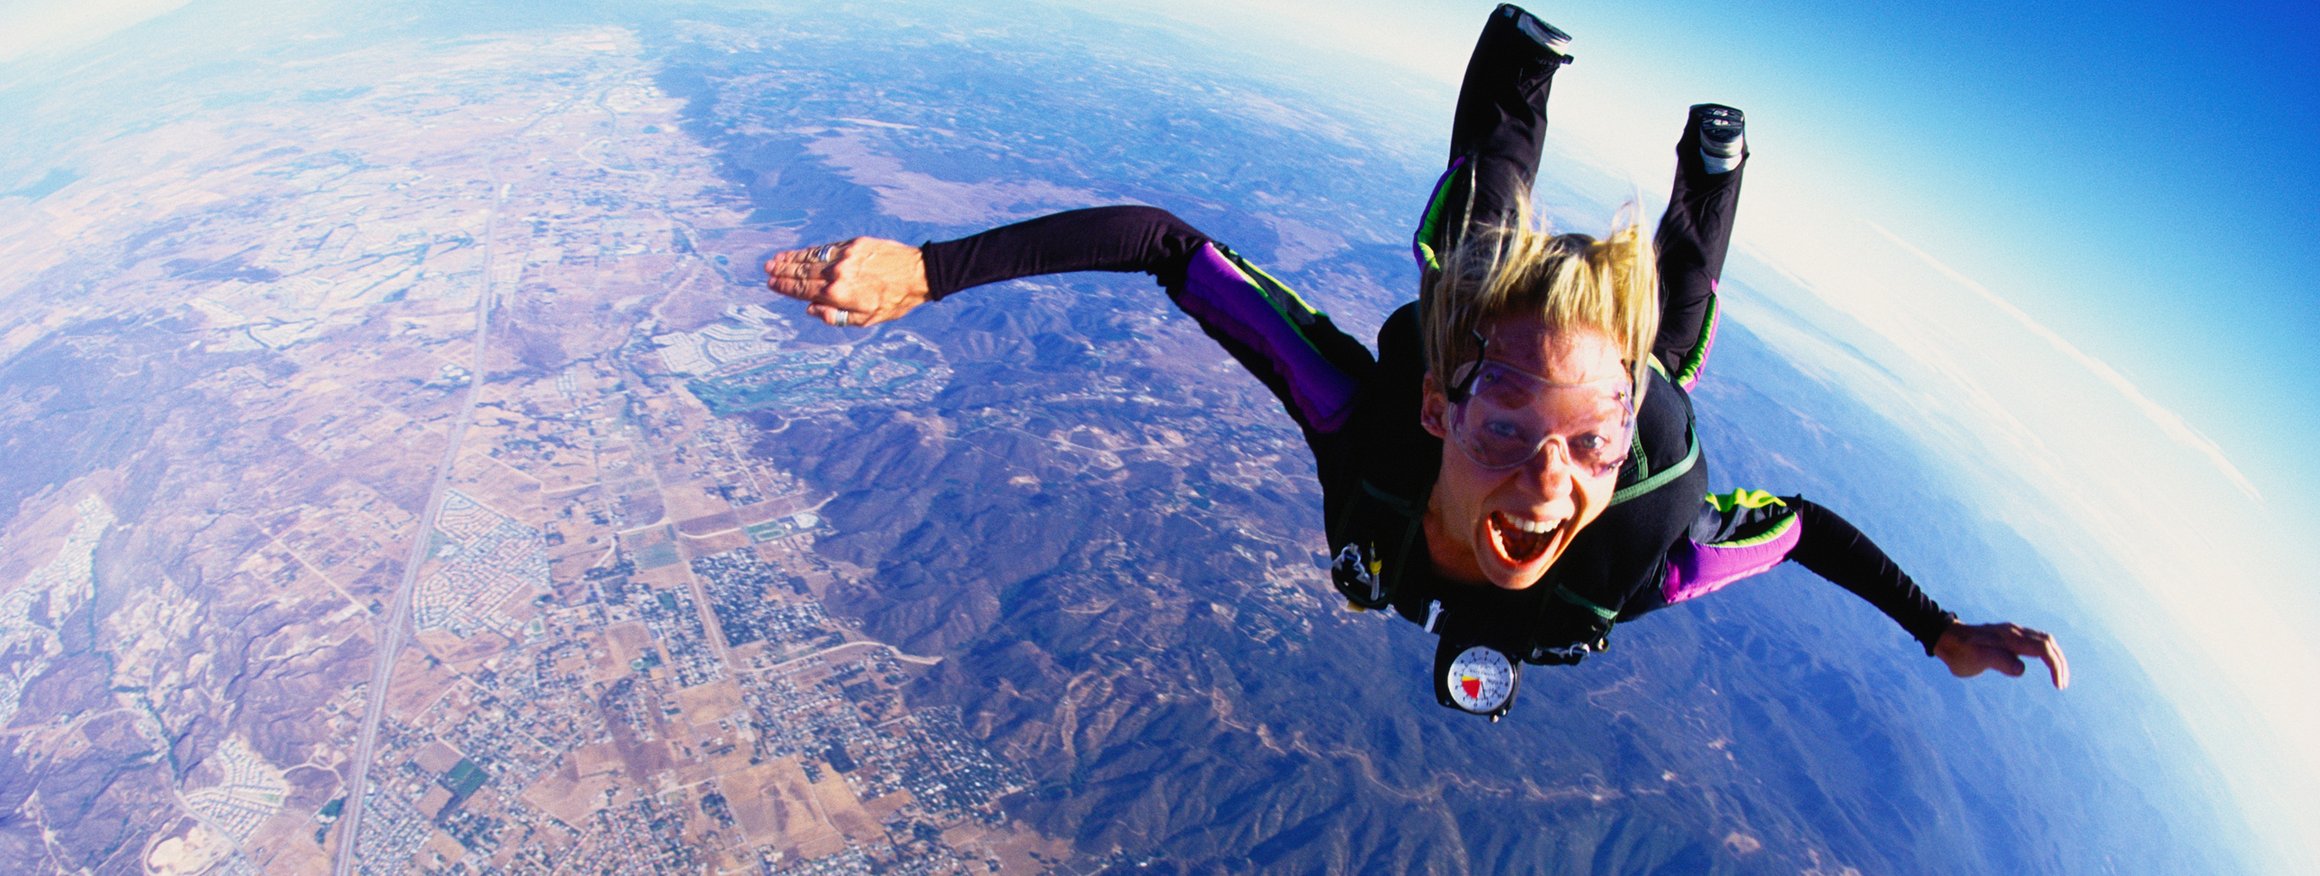 Eine Fallschirmspringerin ist in der Luft im freien Fall mit ausgestreckten Armen und Beinen und lacht dabei.